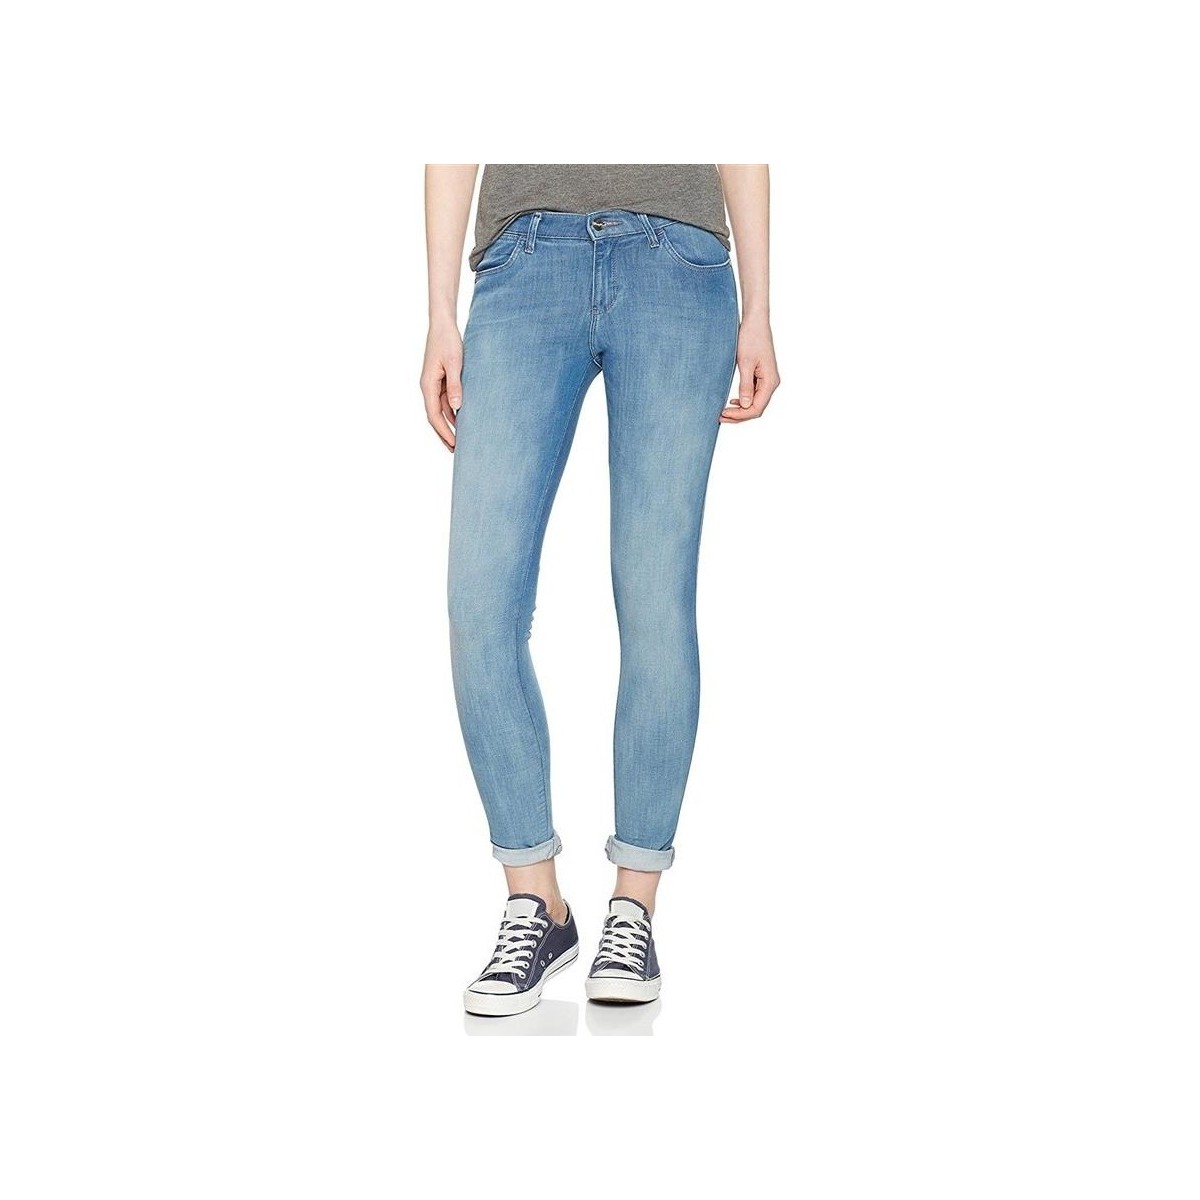 Îmbracaminte Femei Jeans skinny Wrangler Super Skinny W29JPV86B albastru